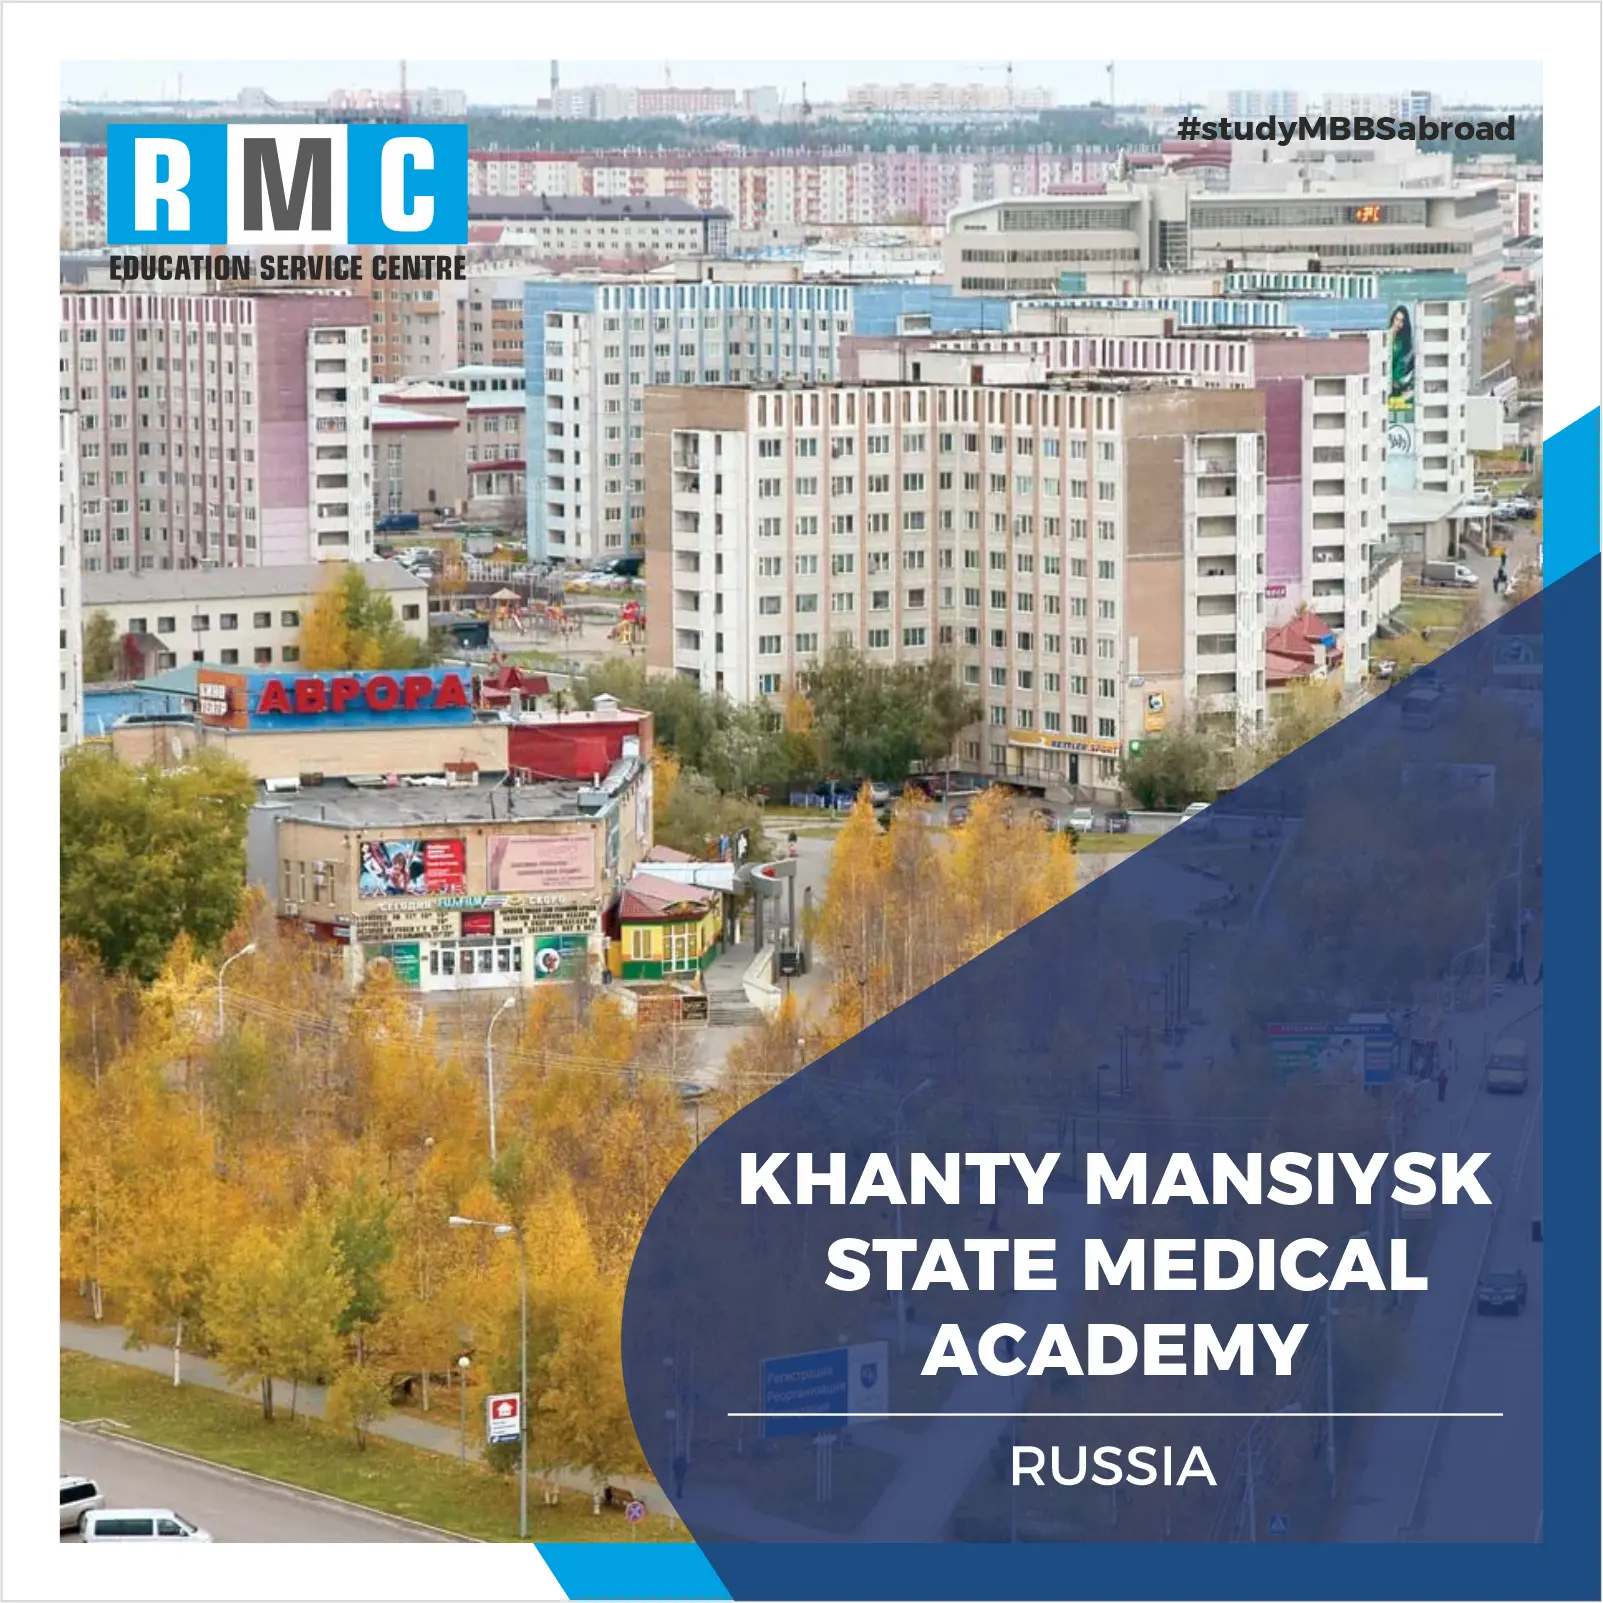 Khanty Mansiysk State Medical Academy